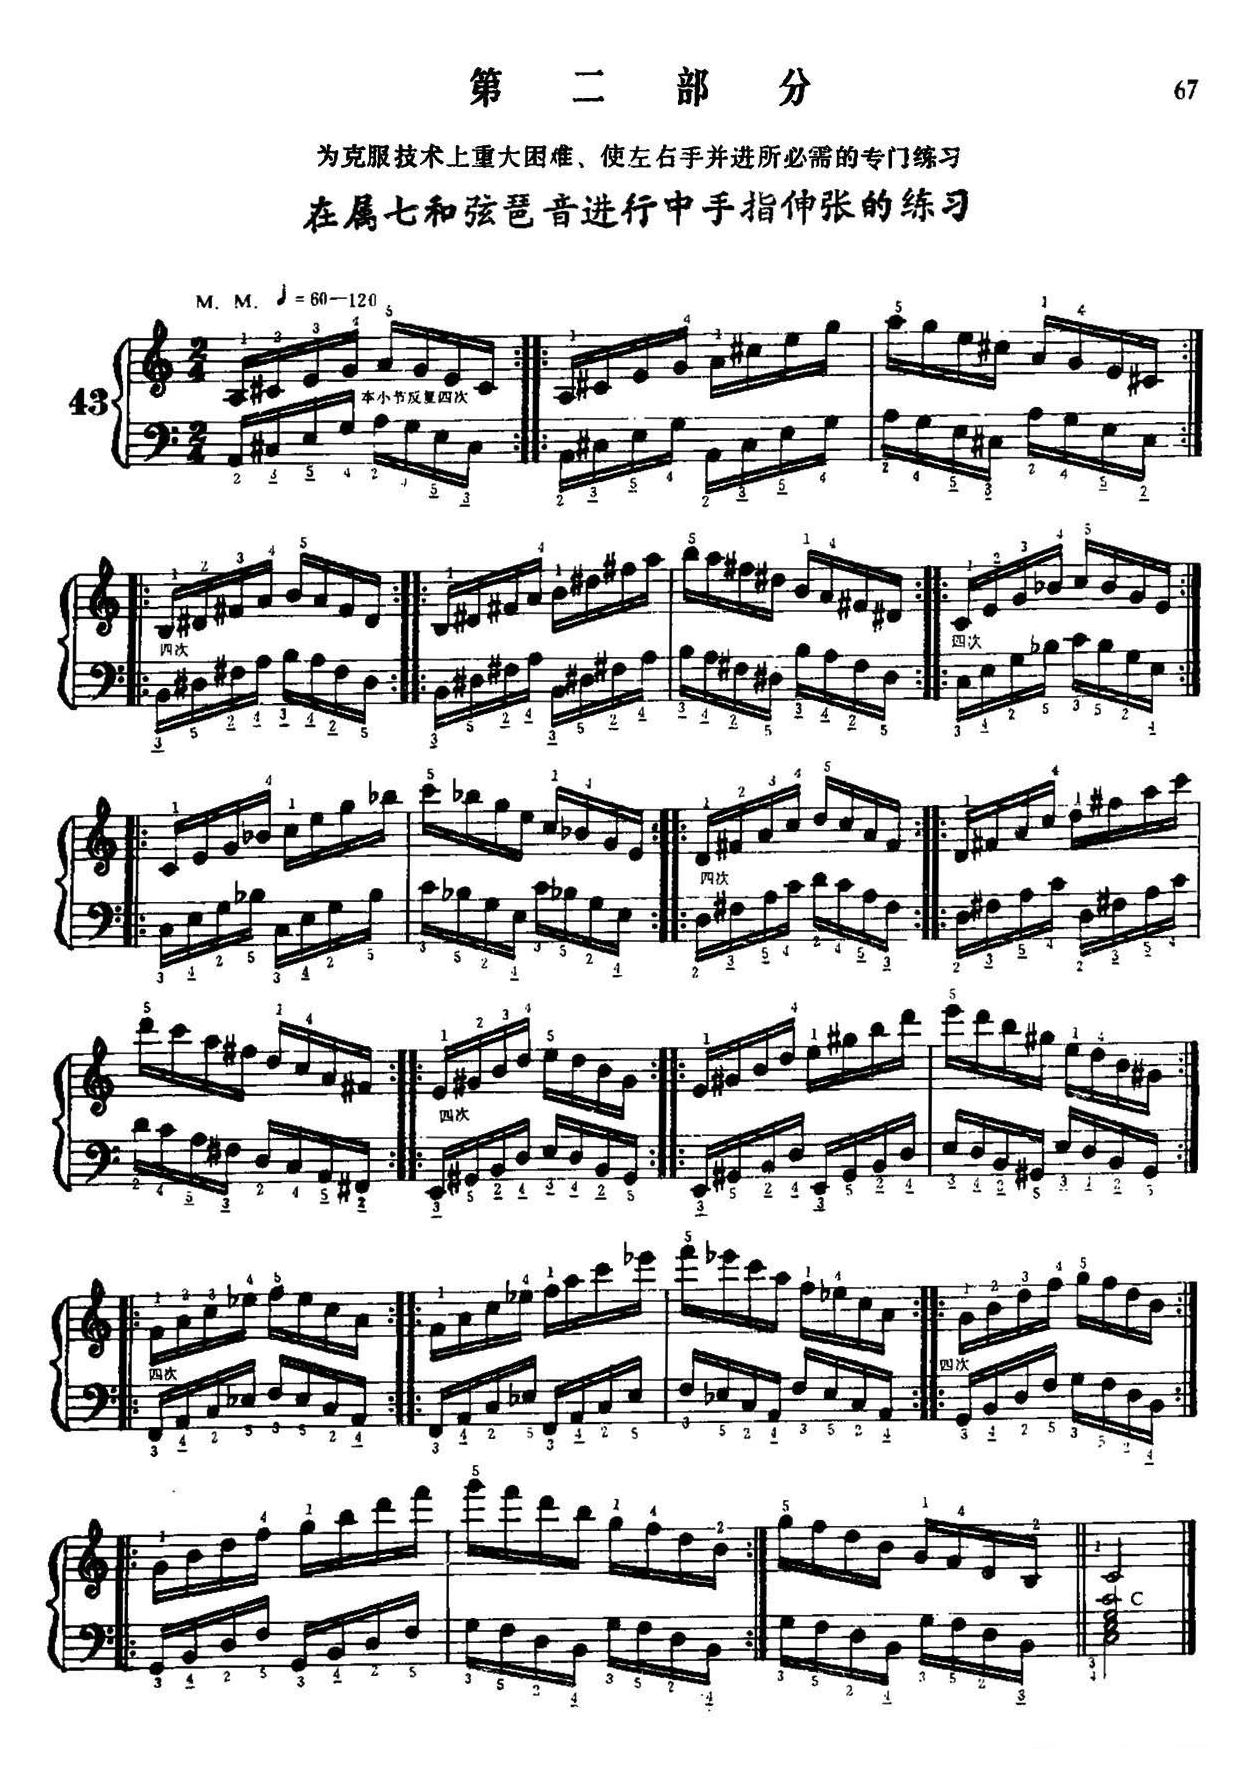 手风琴手指练习 第二部分（在属七和弦琶音进行中手指的伸张练习）